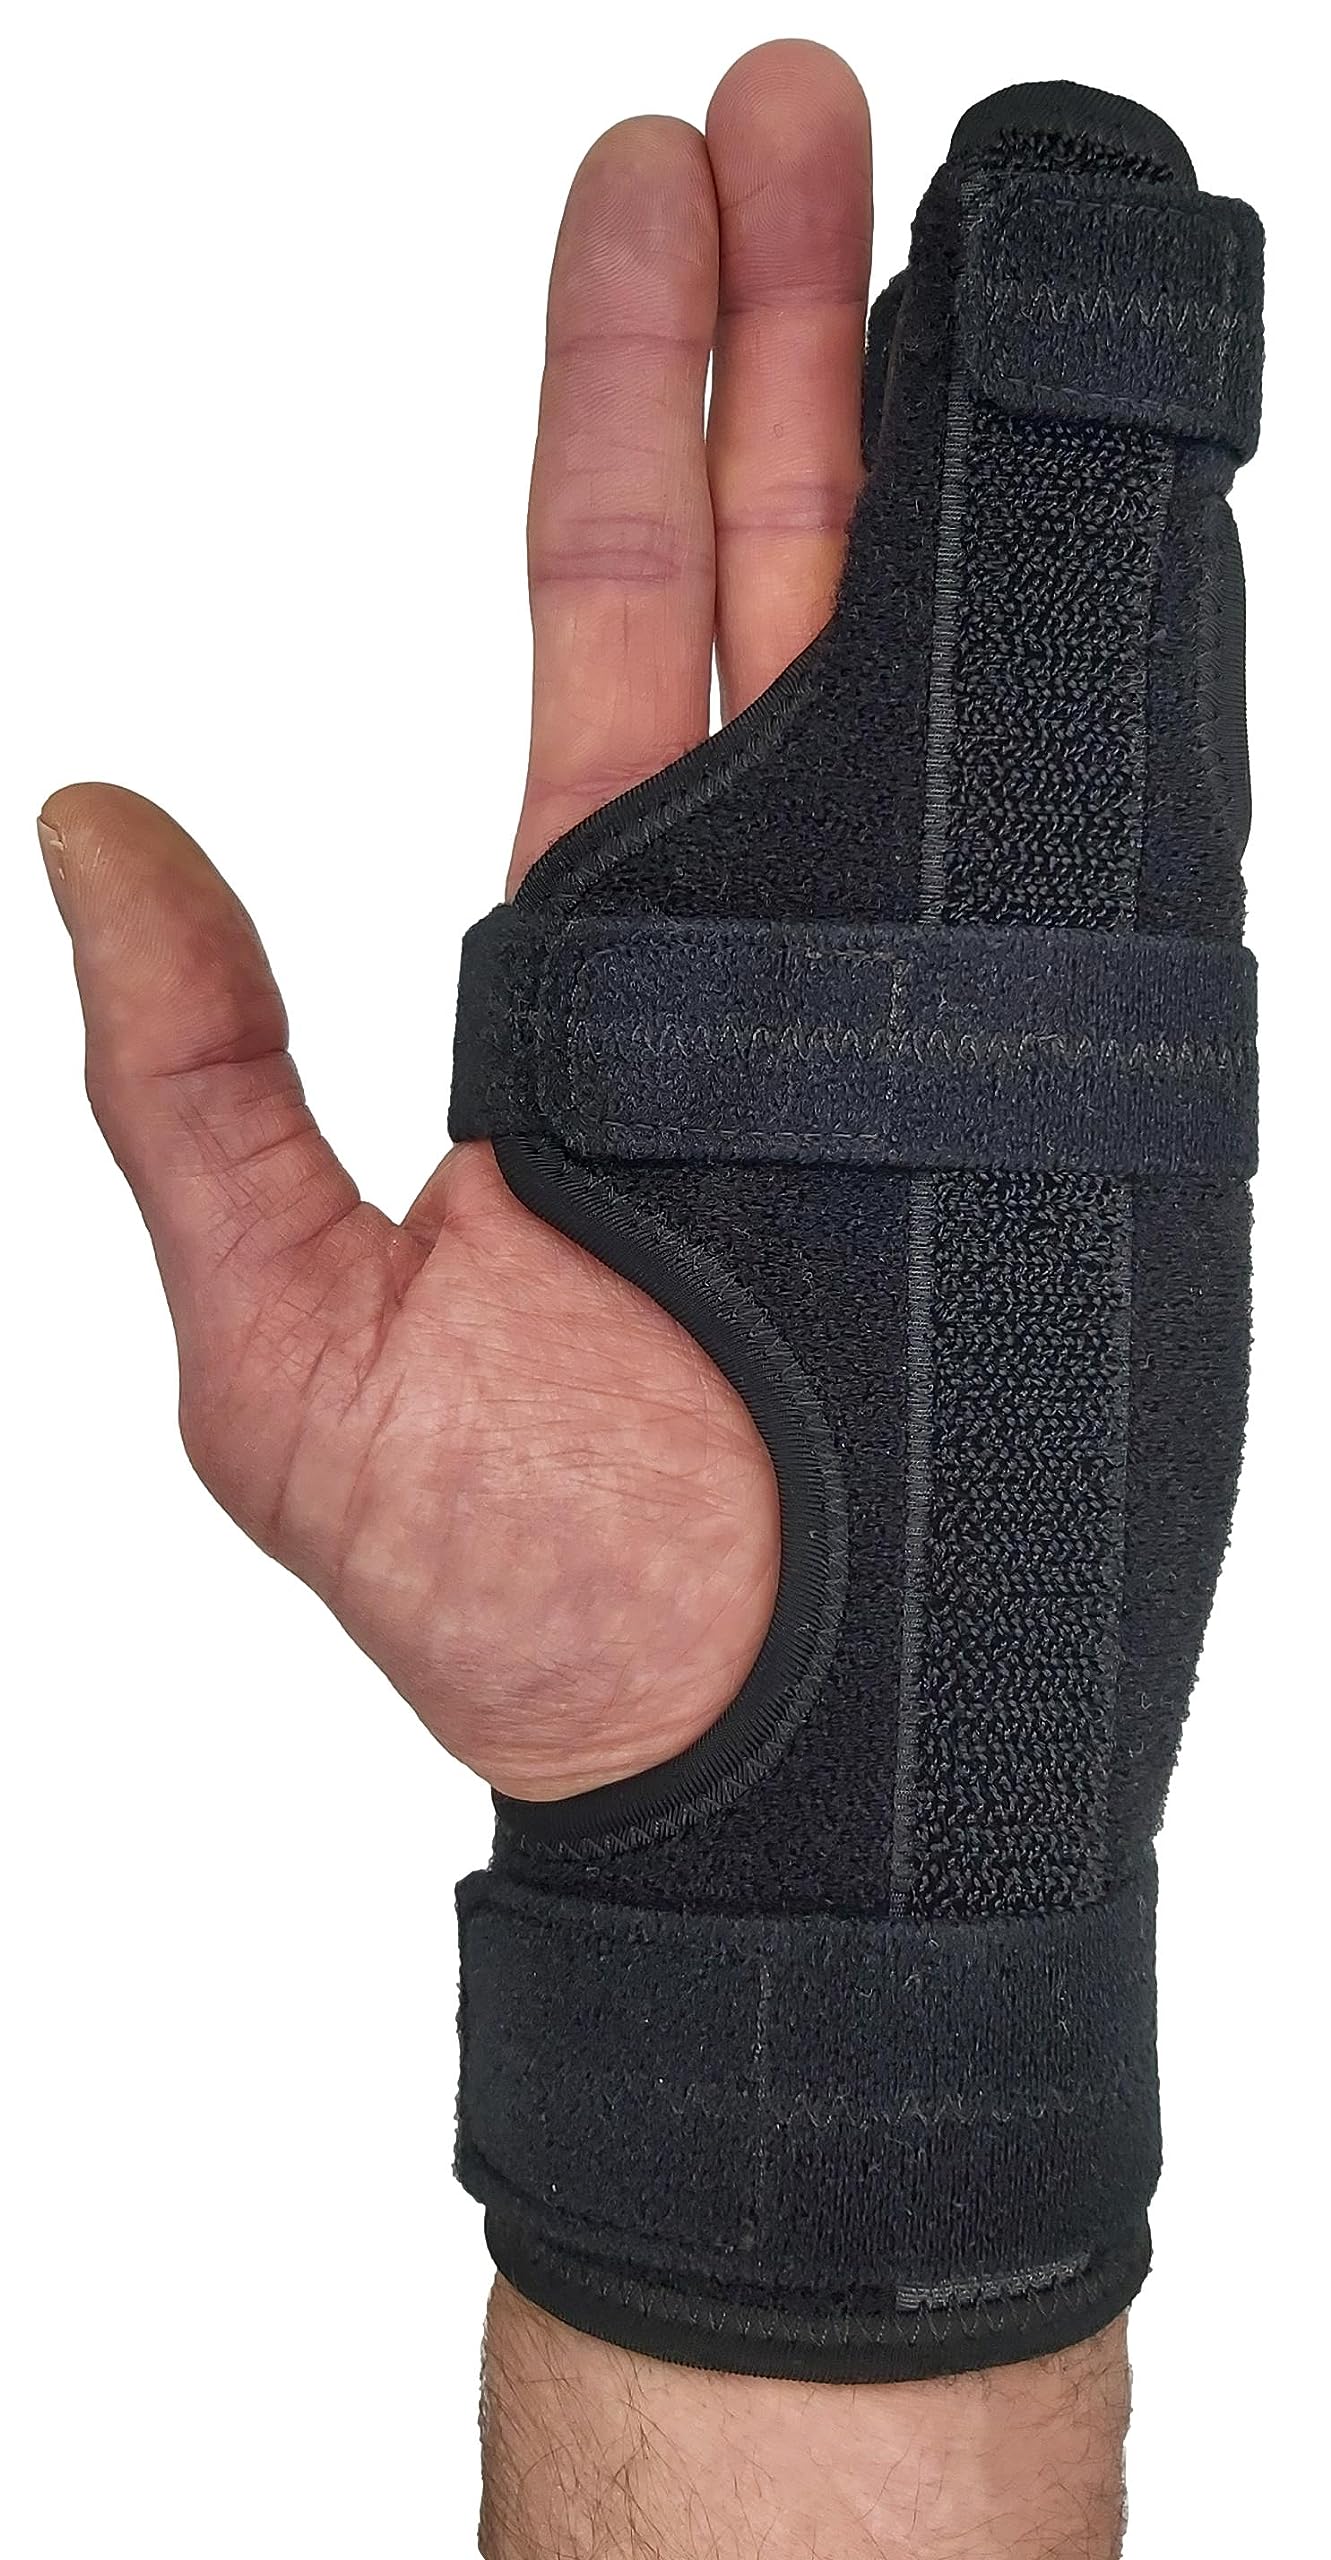 Finger Splint Hand Brace | Pinky Finger Splint For Boxer Fractures, Broken Ring Finger | Little Finger Cast, Trigger Finger Immobilizer Straightener, Ulnar Gutter Splint Support